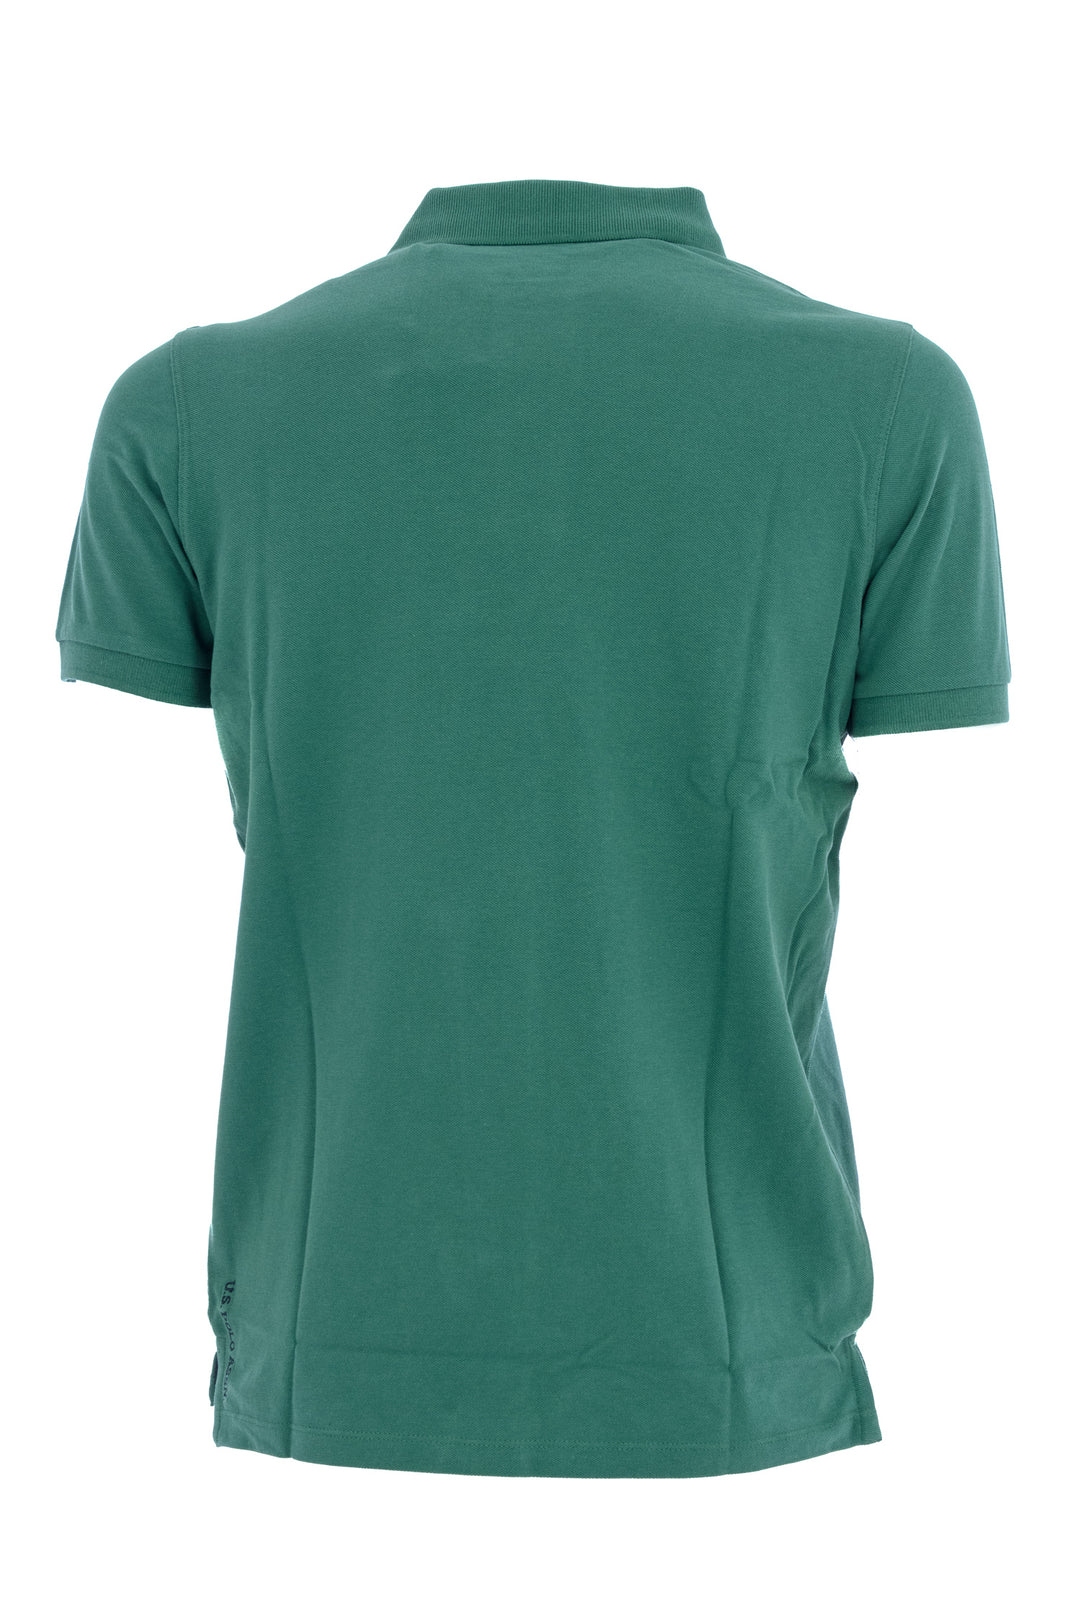 U.S. POLO ASSN. Polo in tricot di cotone con logo ricamato verde - Mancinelli 1954